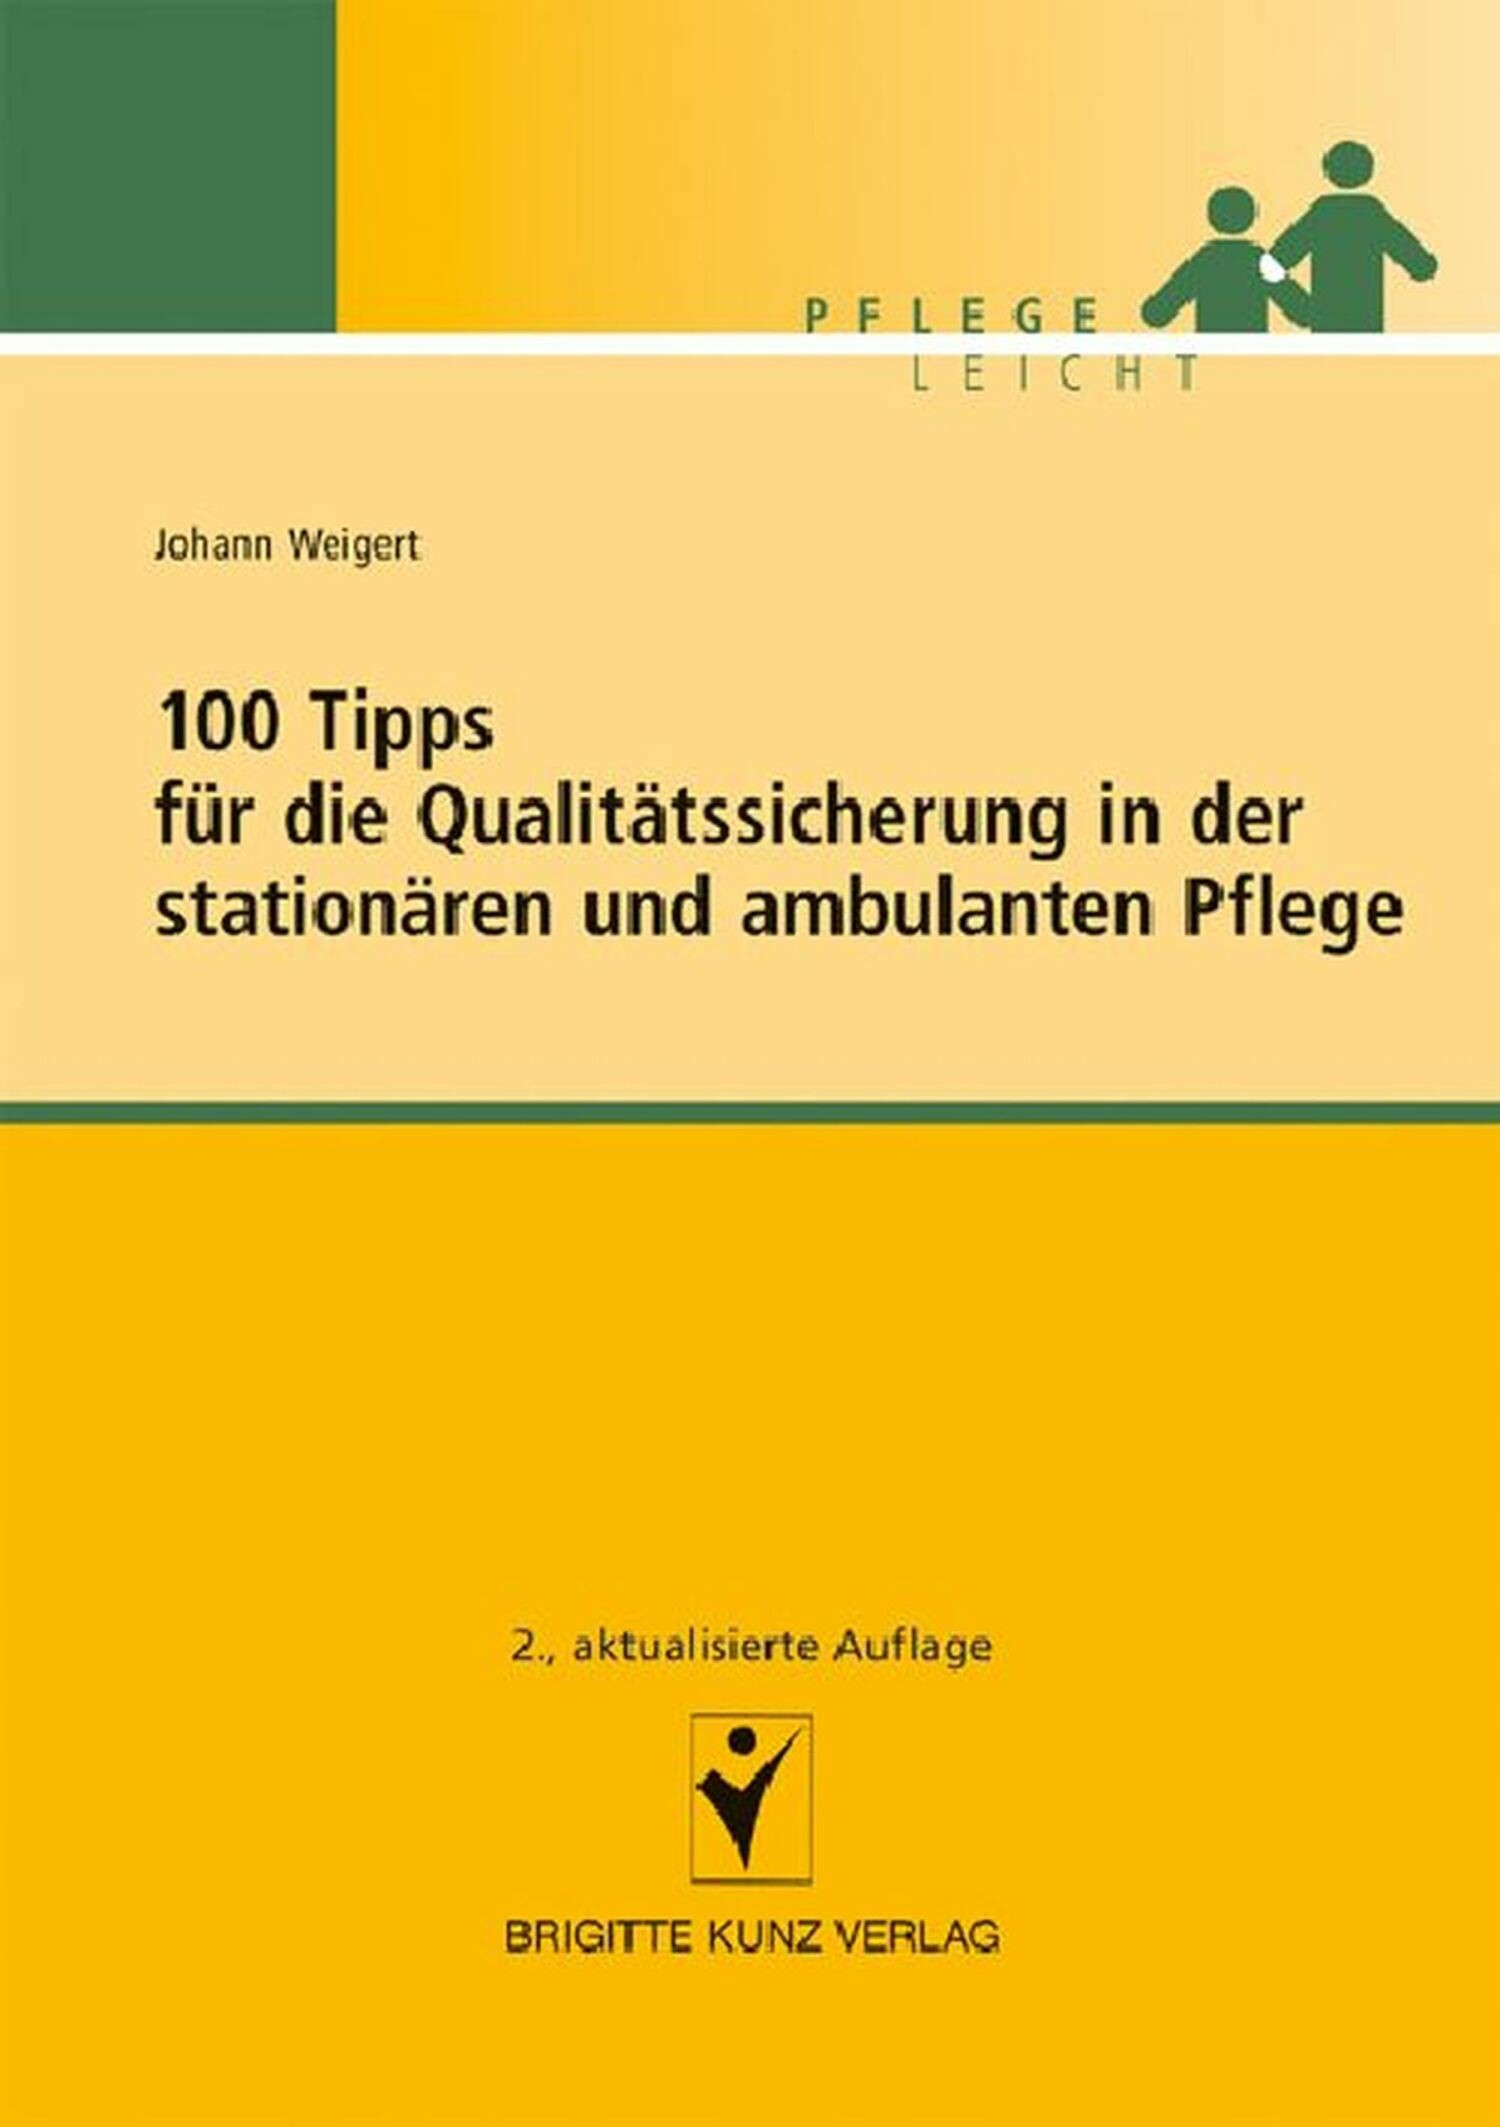 100 Tipps für die Qualitätssicherung in der stationären und ambulanten Pflege